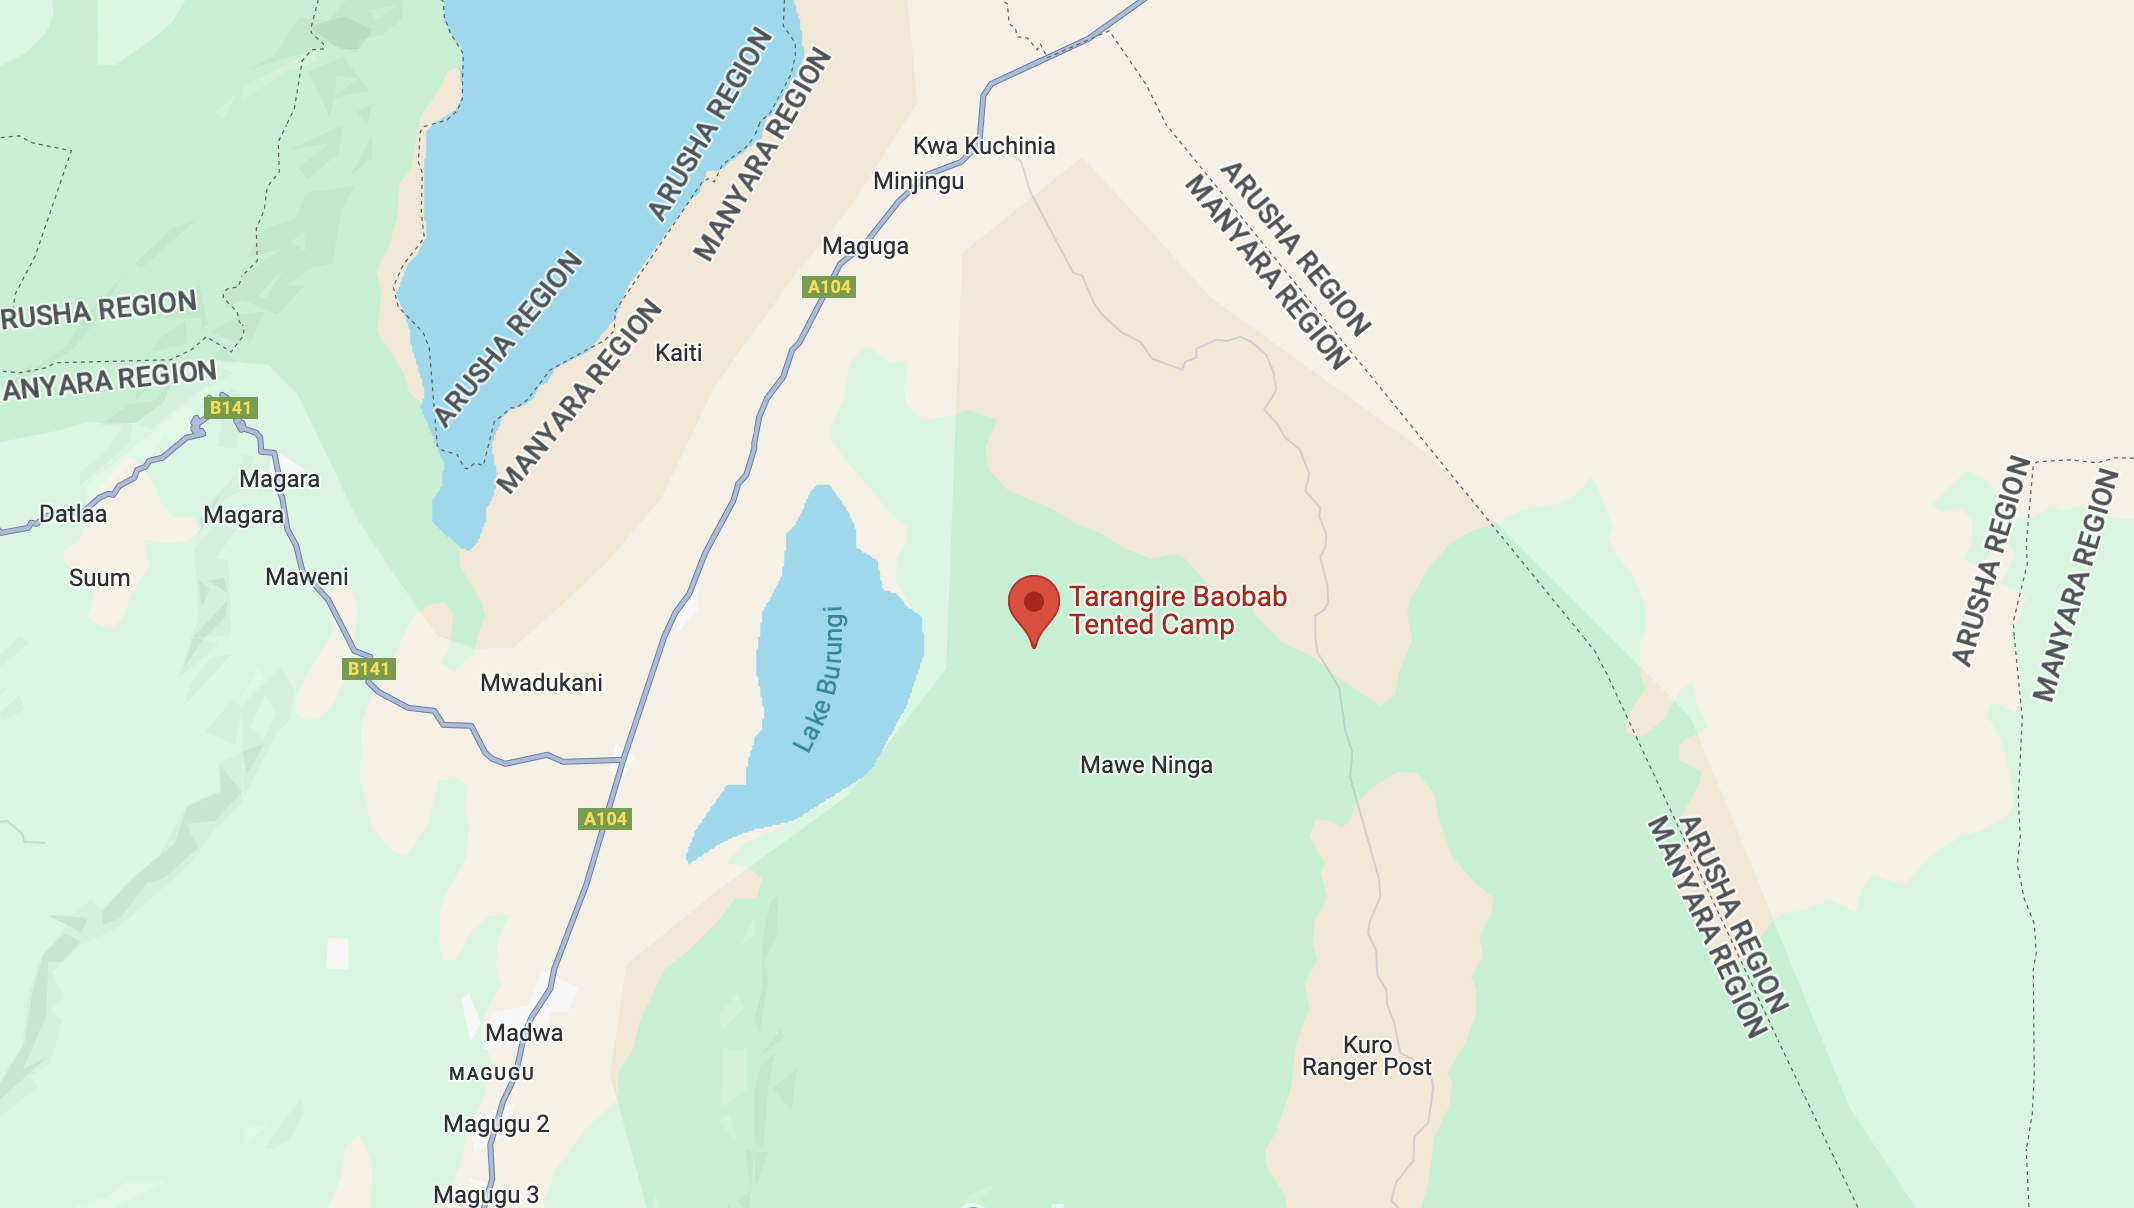 Google map image of Lake Burunge near Tarangire